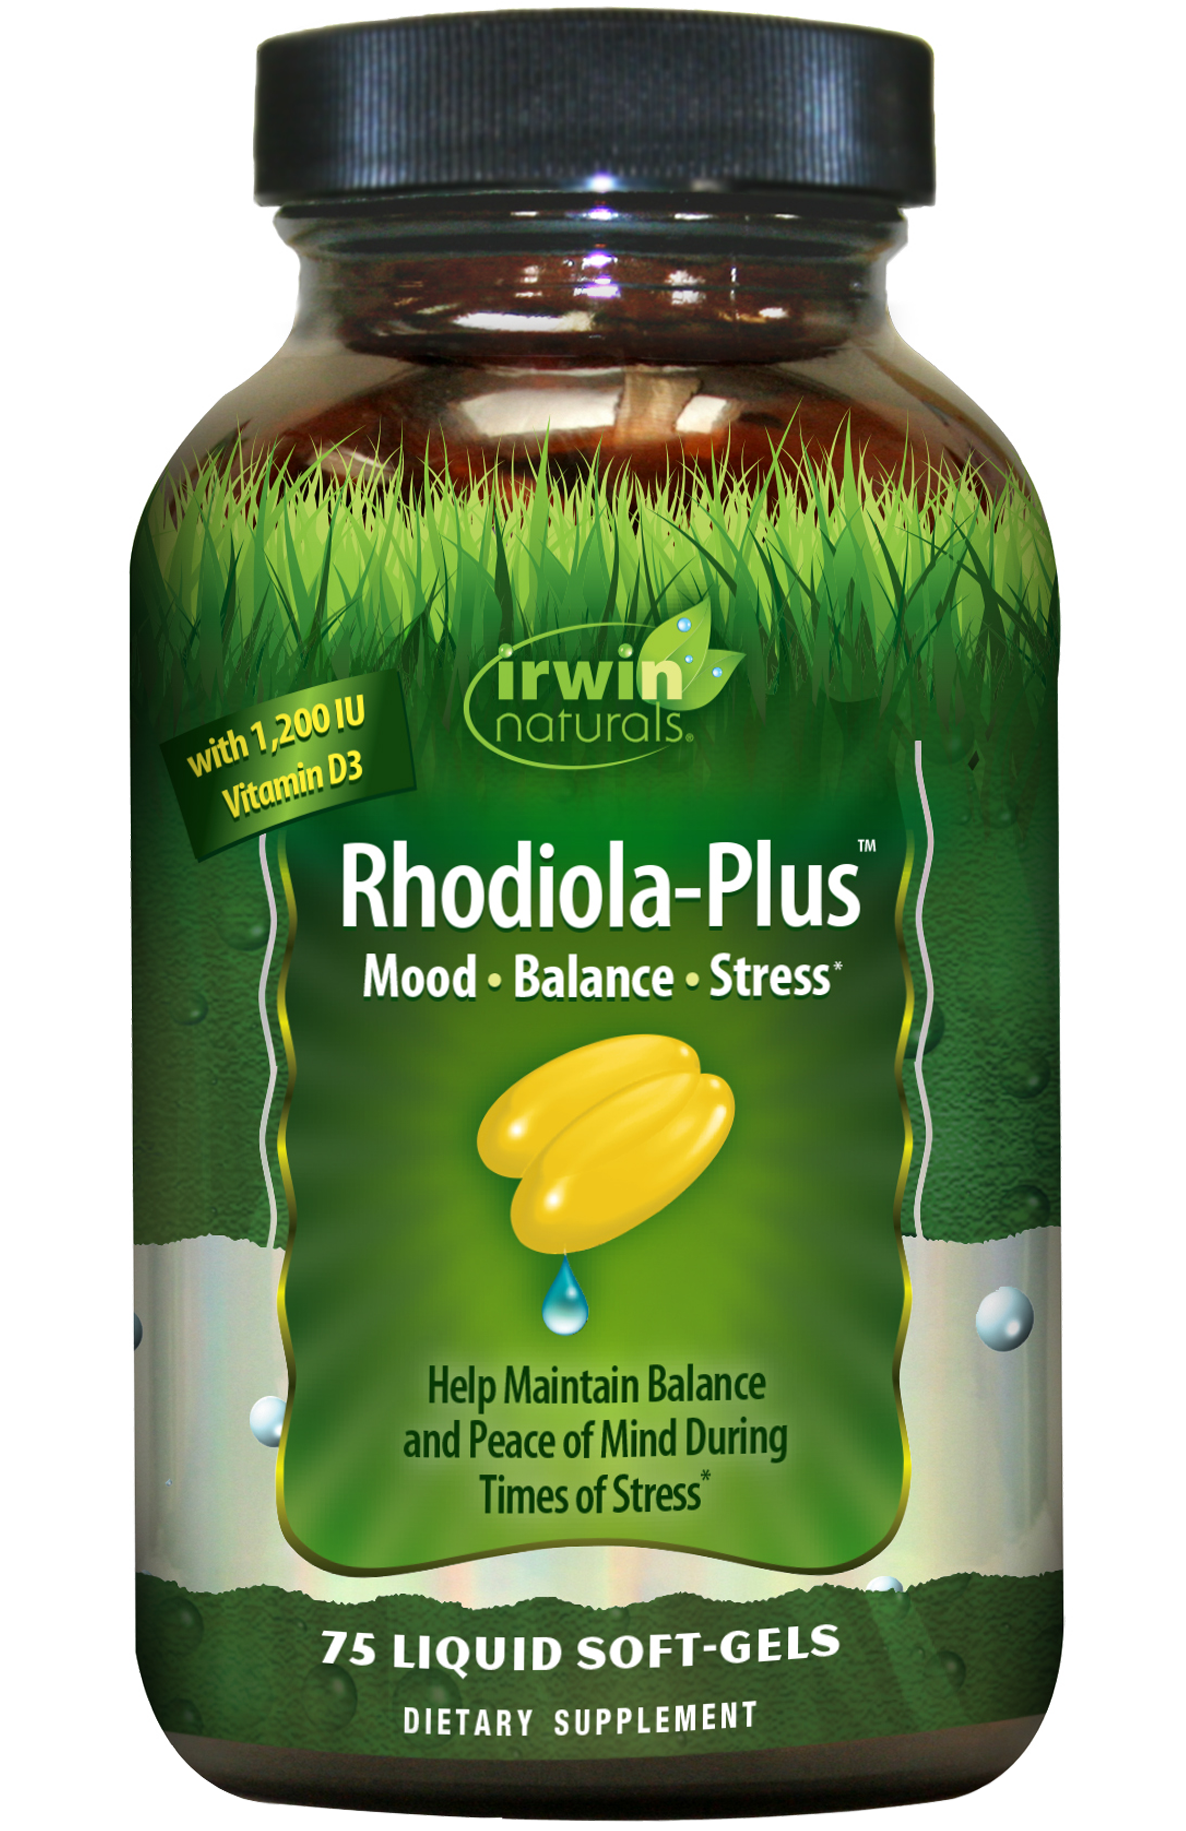 Rhodiola-Plus